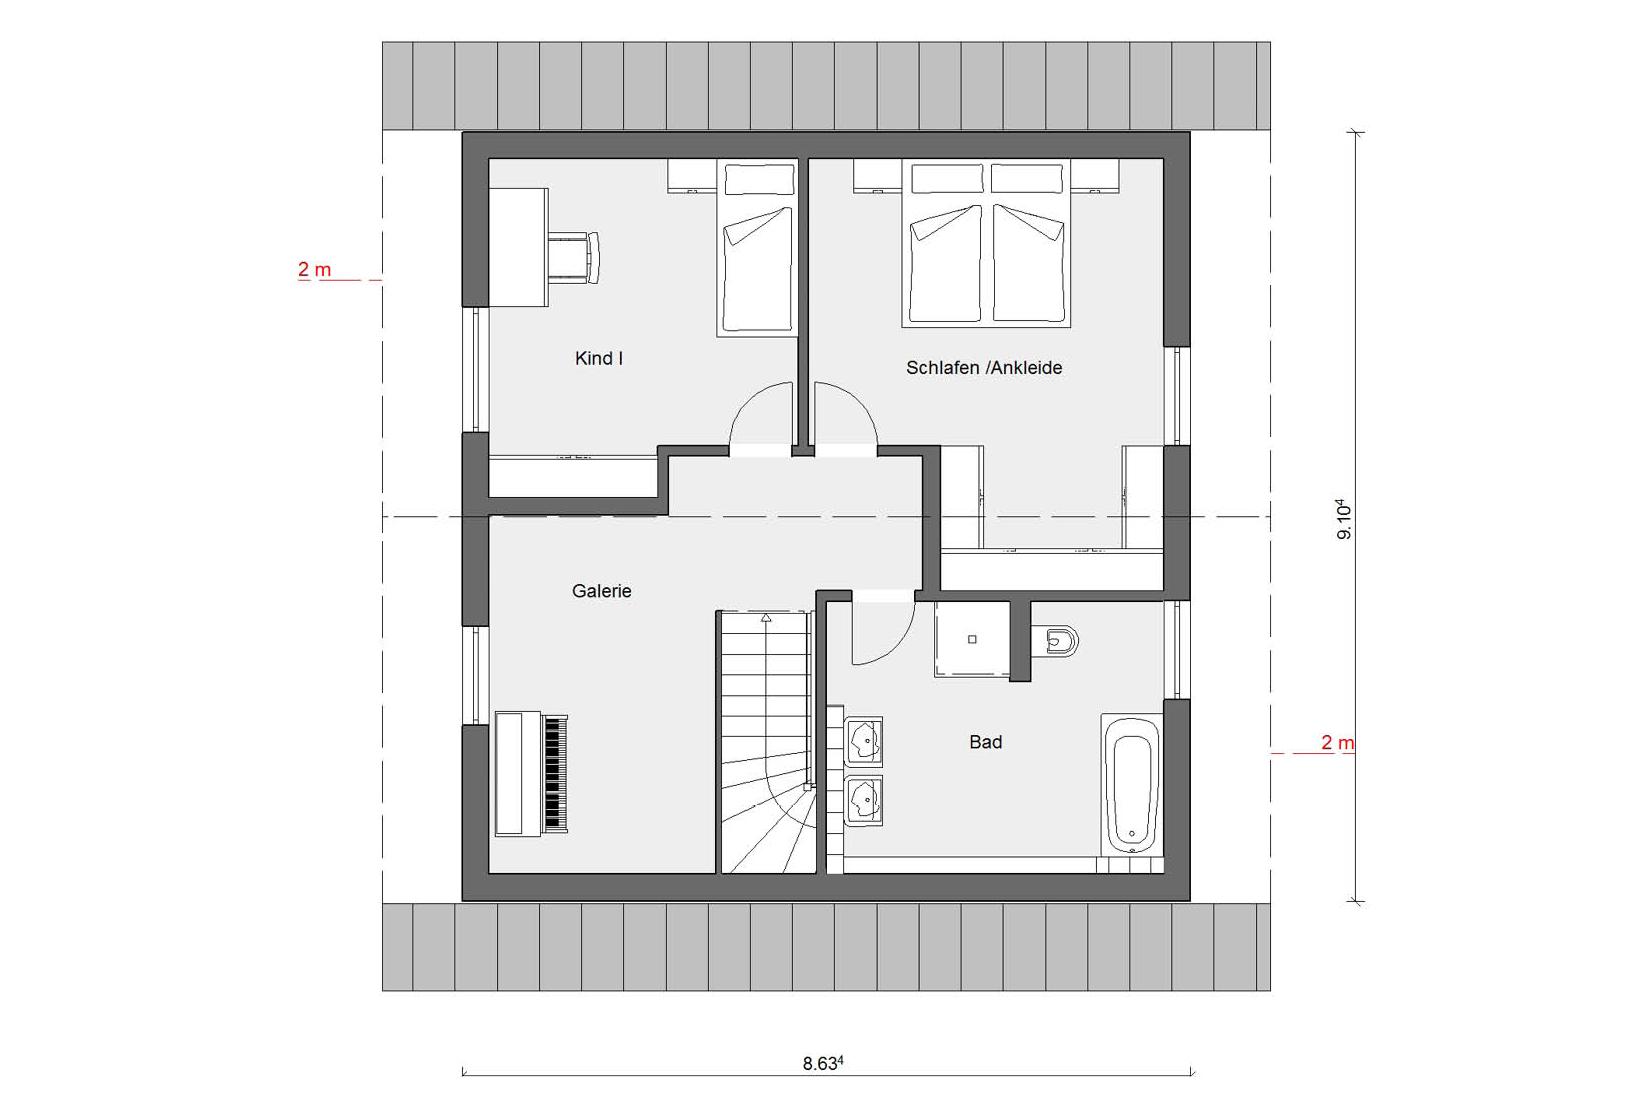 Attic floor plan E 15-124.3 generous living